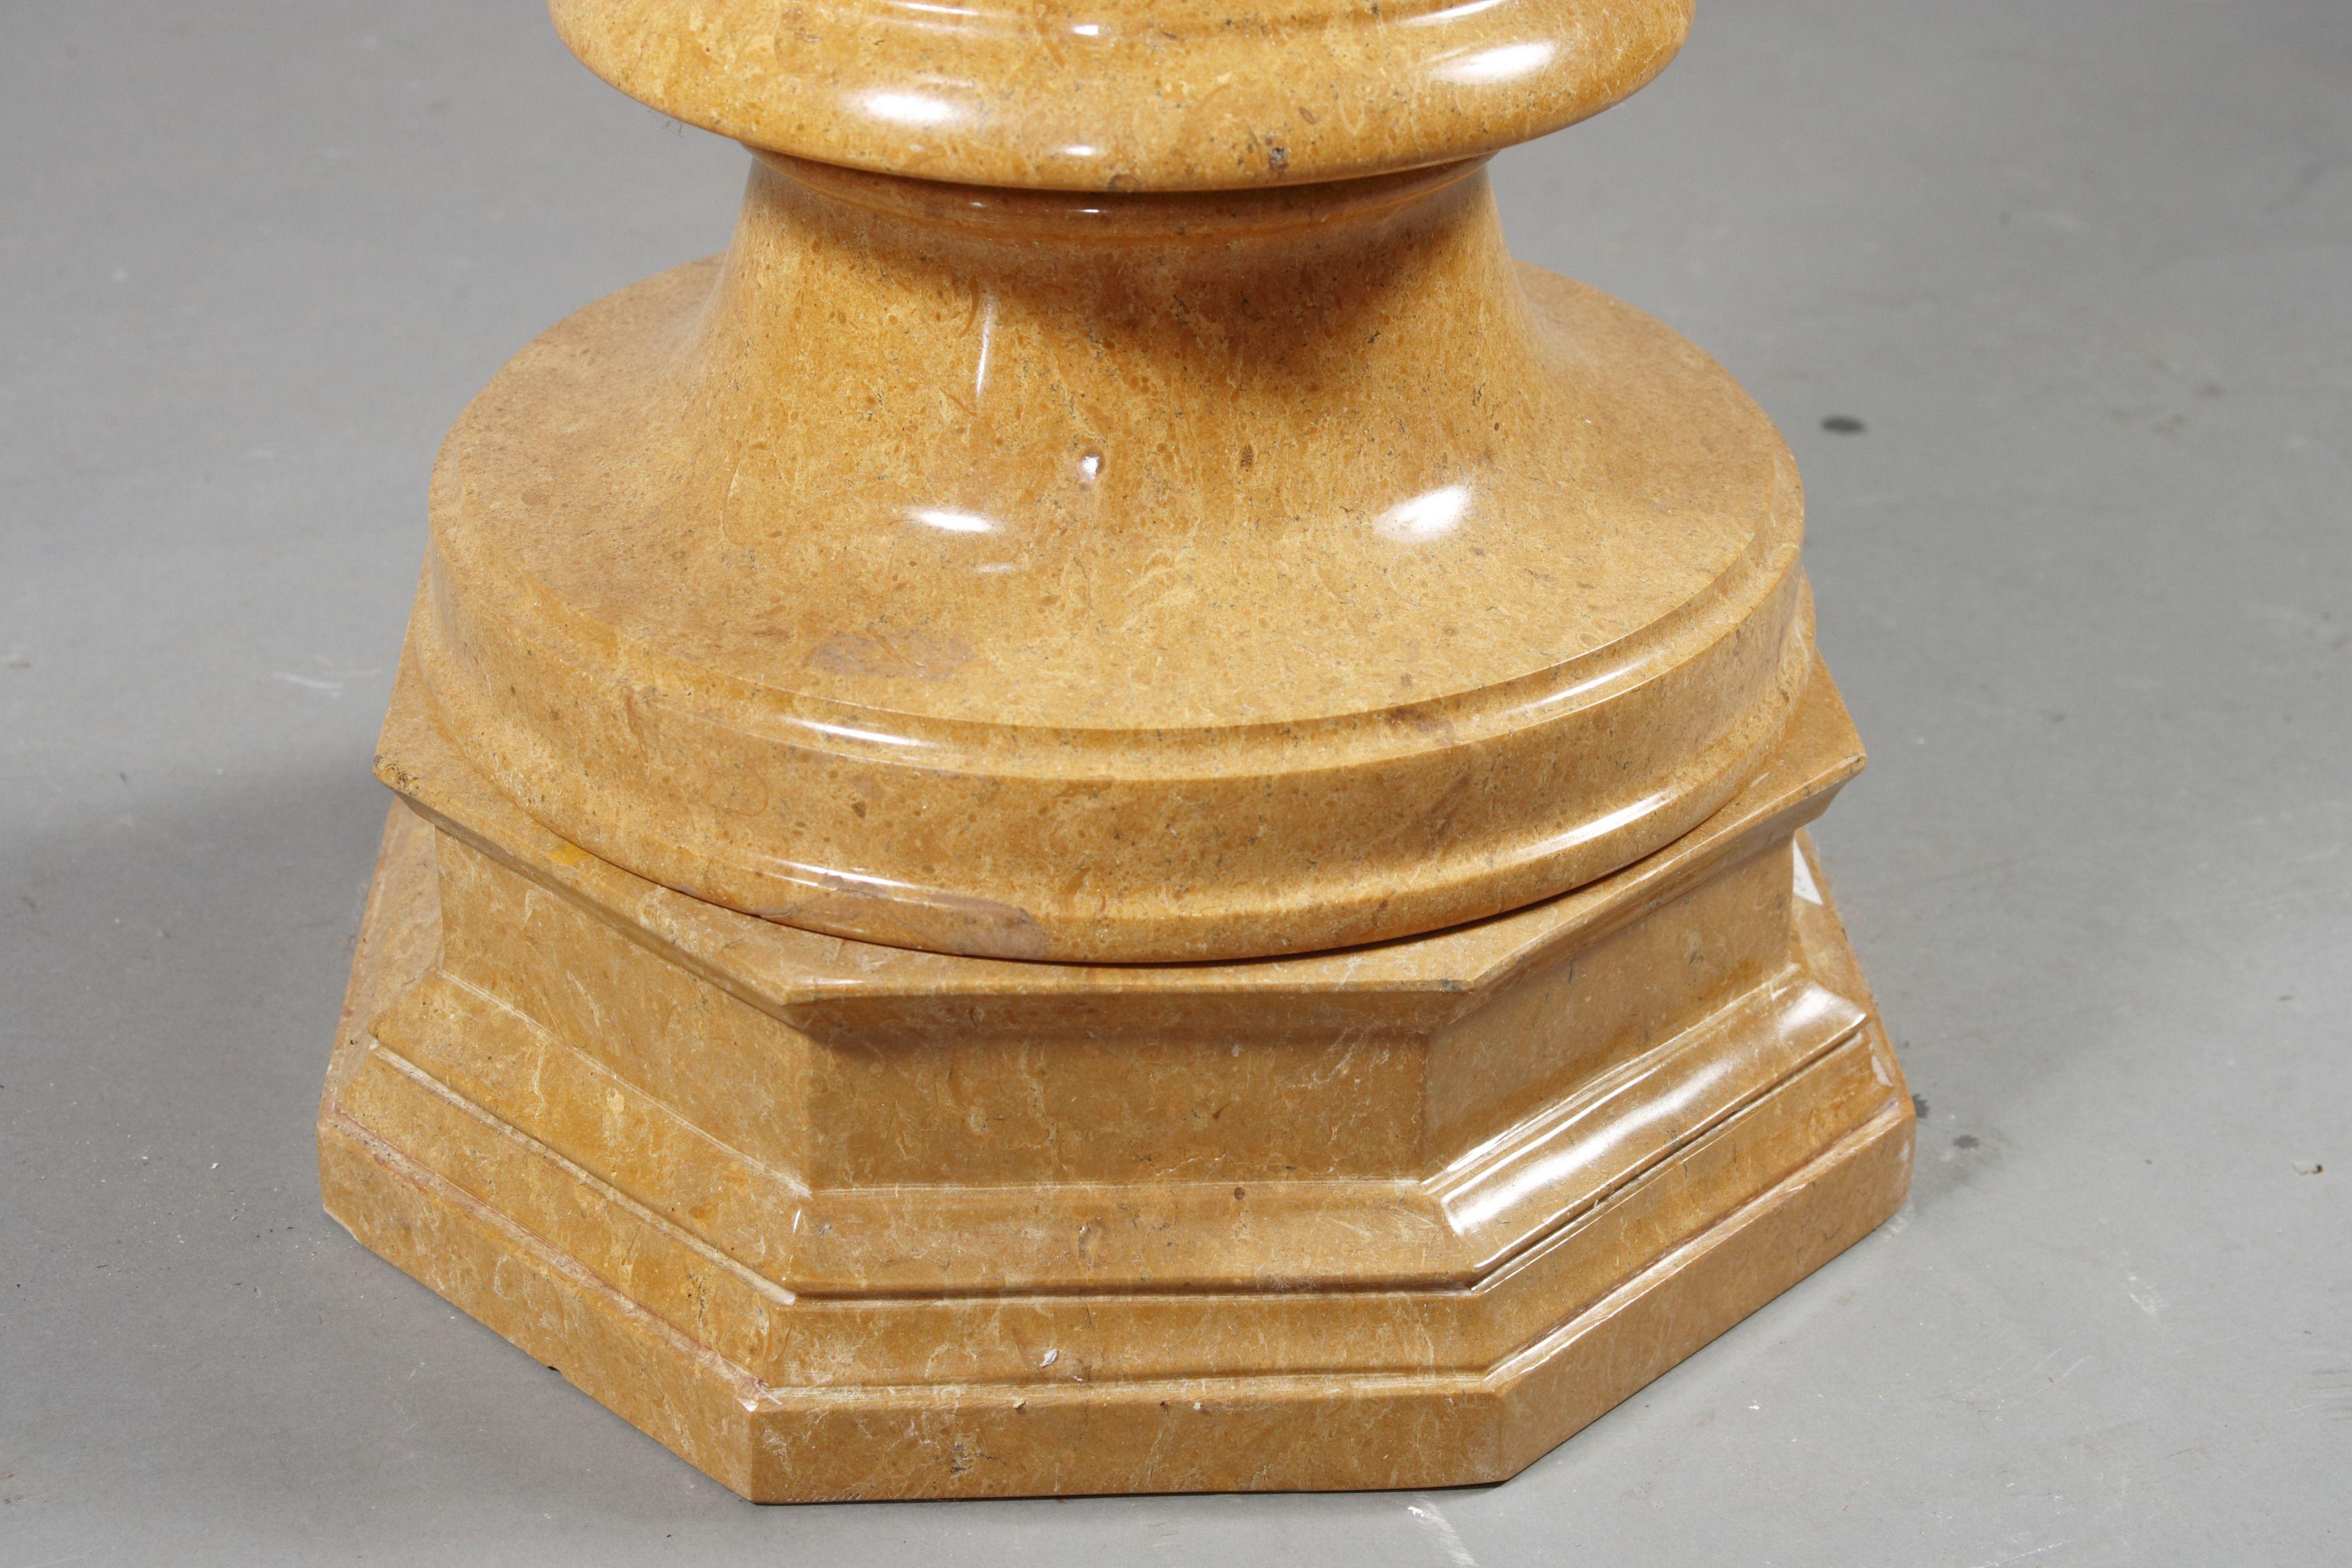 Monumentale Marmorkrater-Vase im klassizistischen Stil.
Natürlicher Marmor in Goldgelb.

(U-Hai-8).